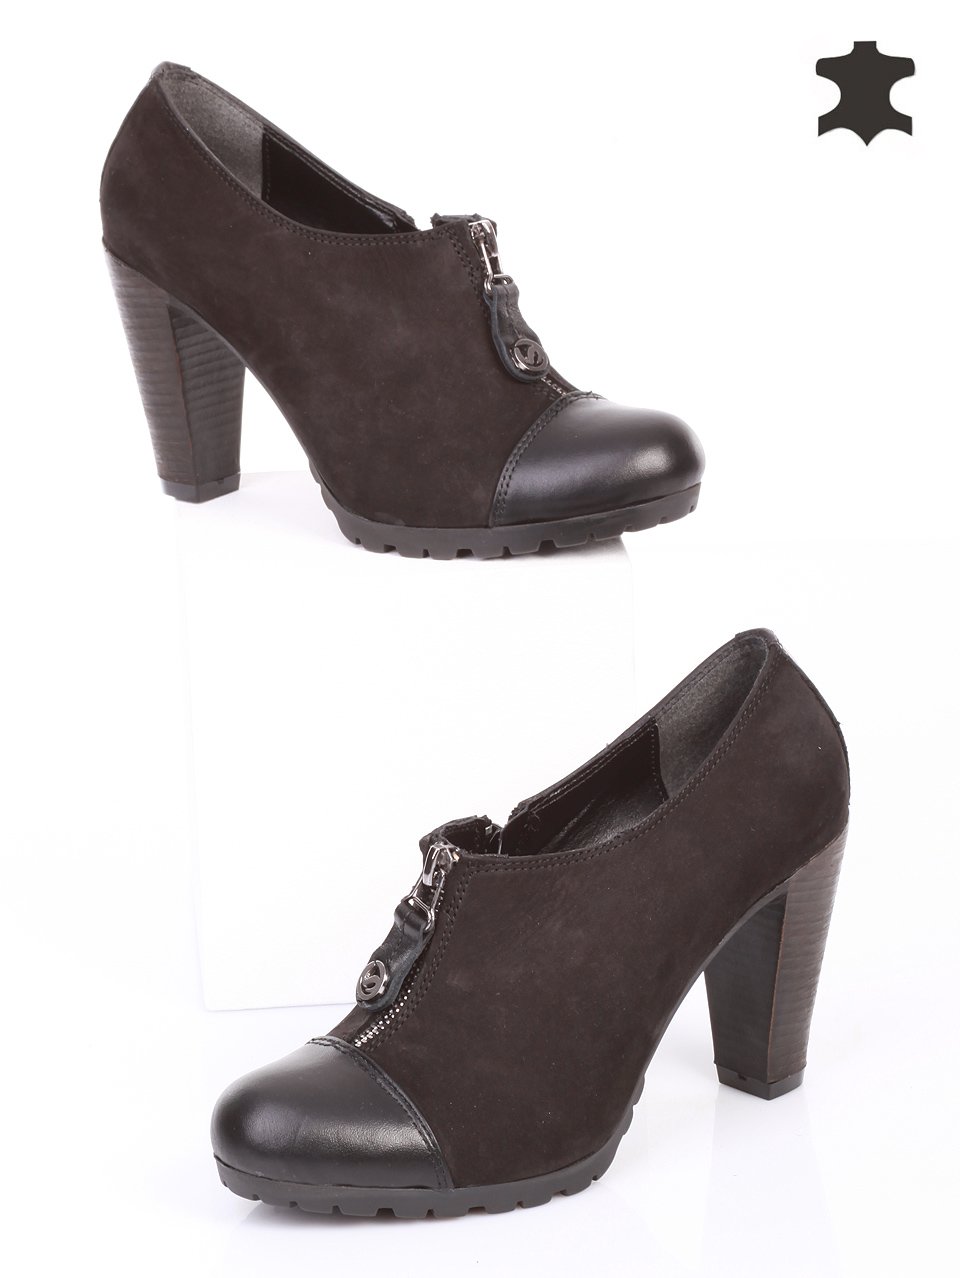 Дамски обувки от естествена кожа и естествен набук 3AT-14926 black